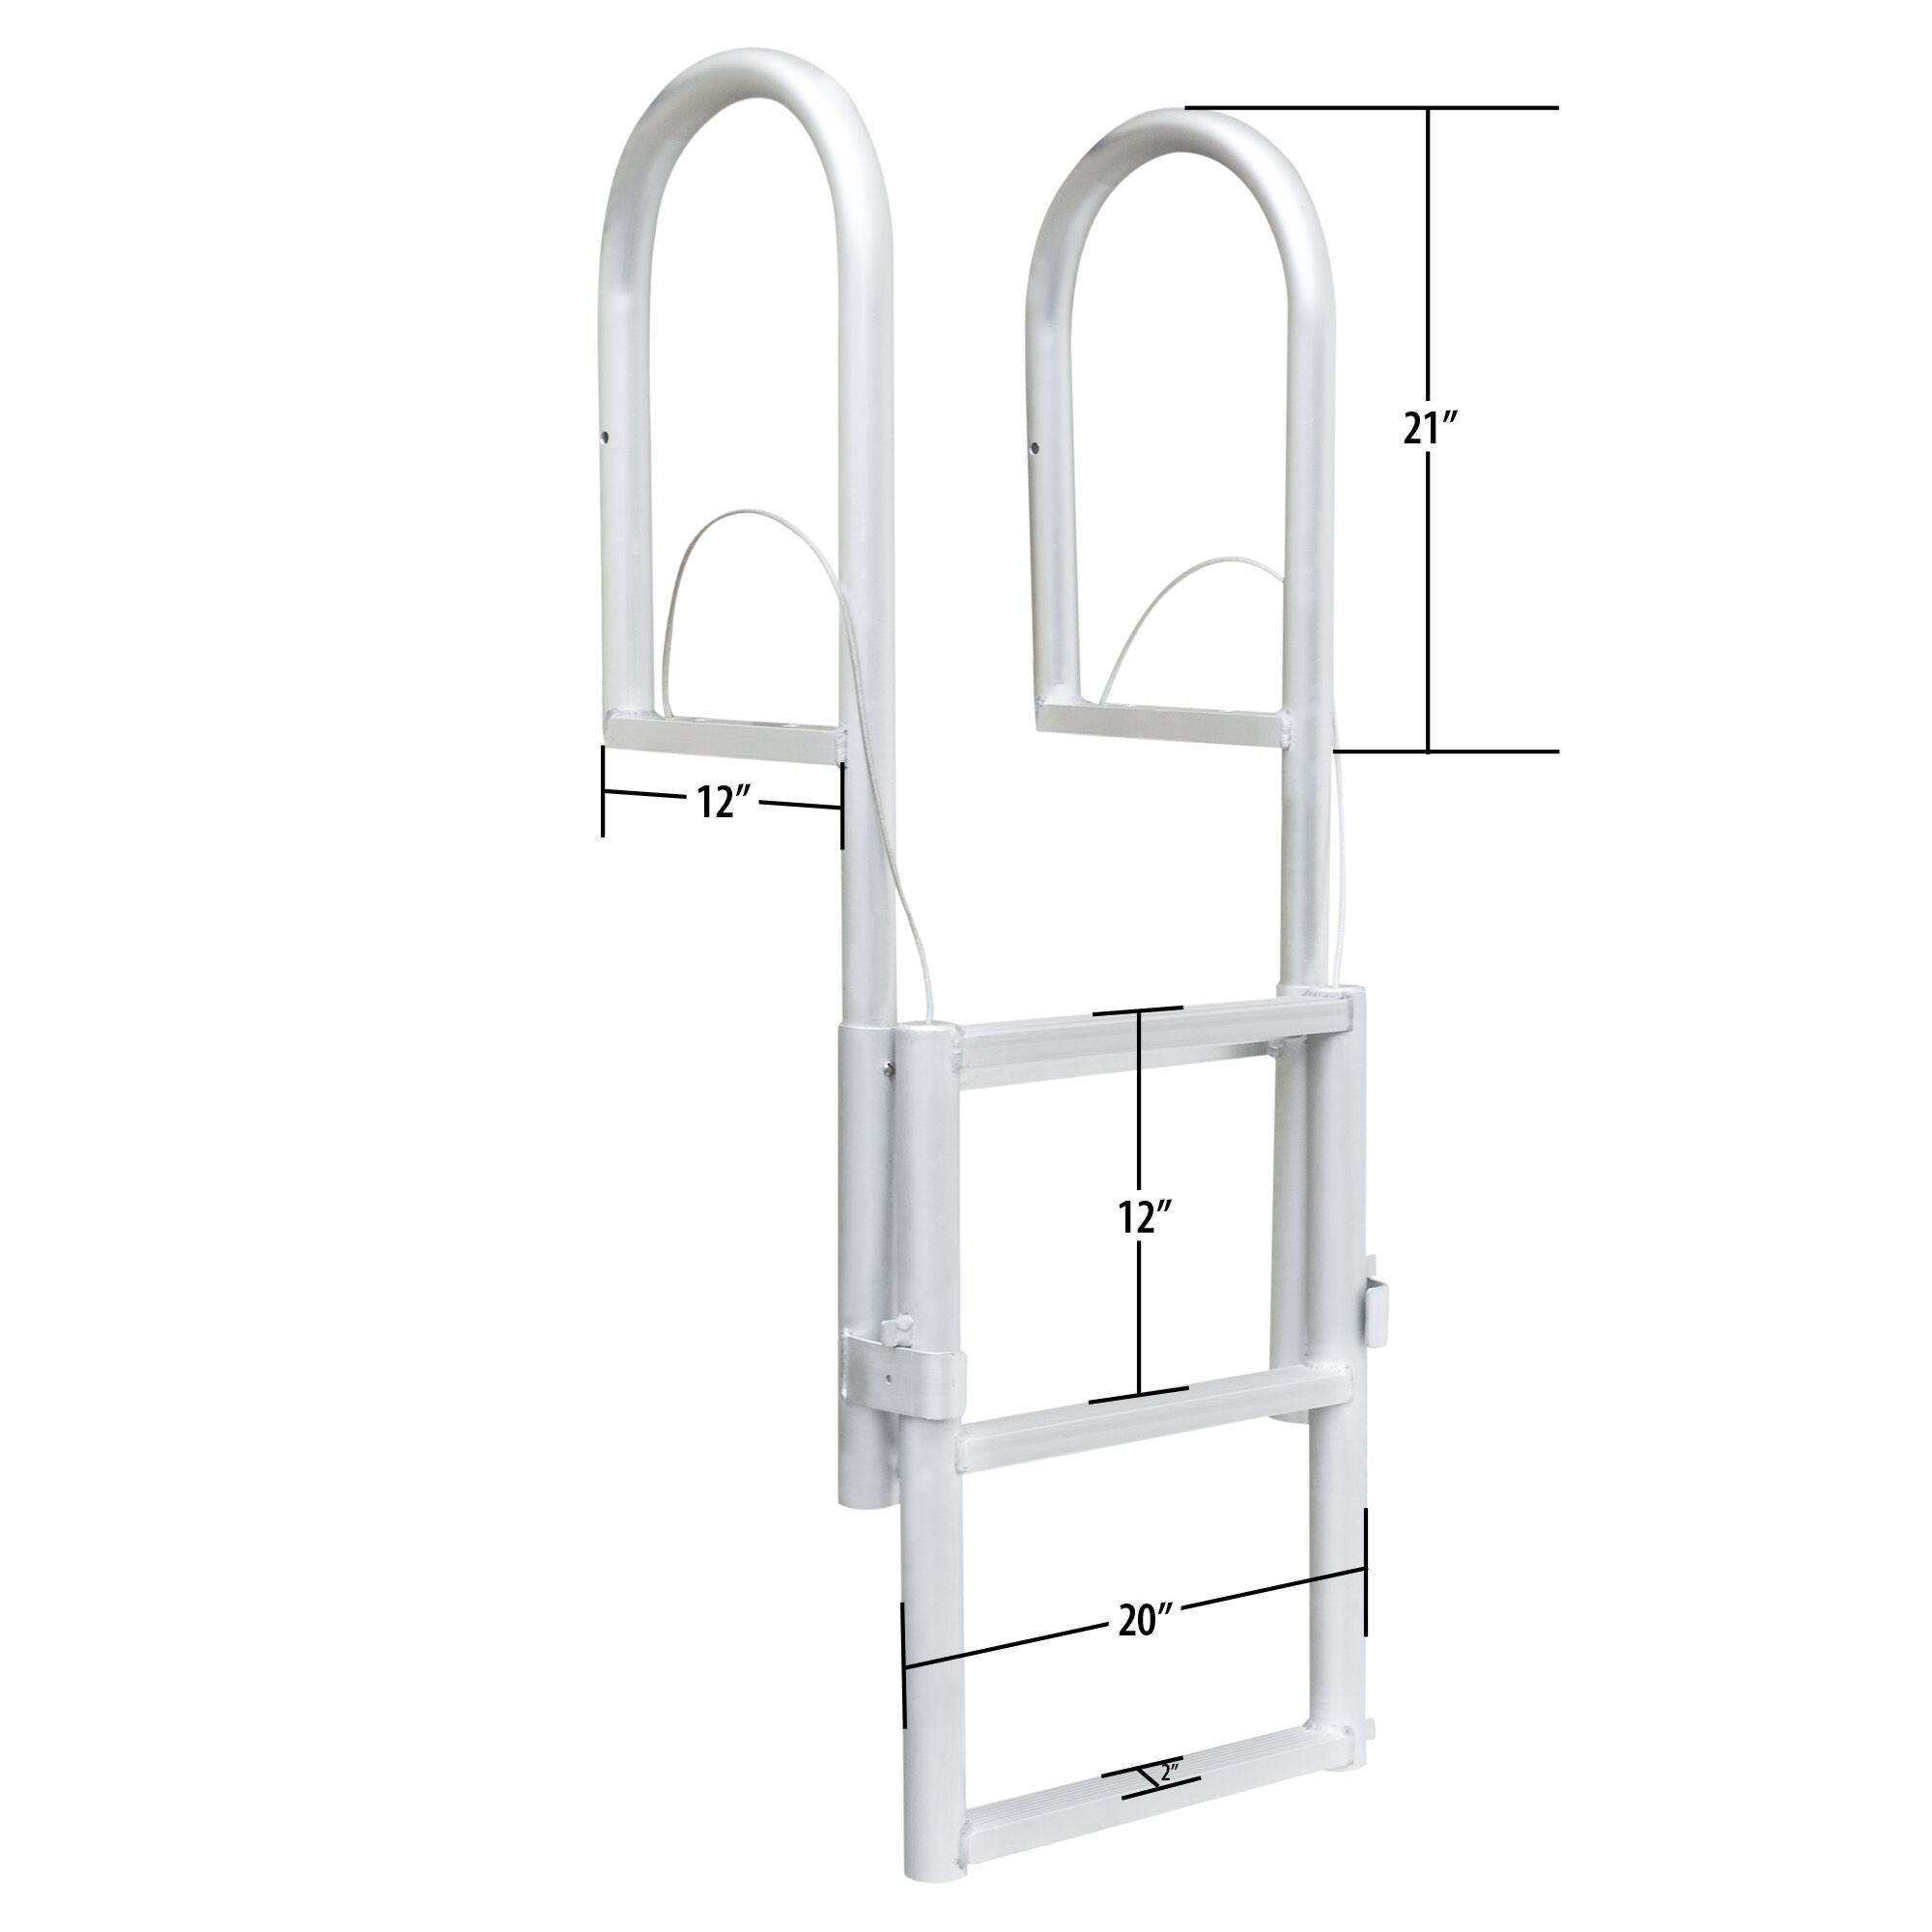 dockmate ladder hardware